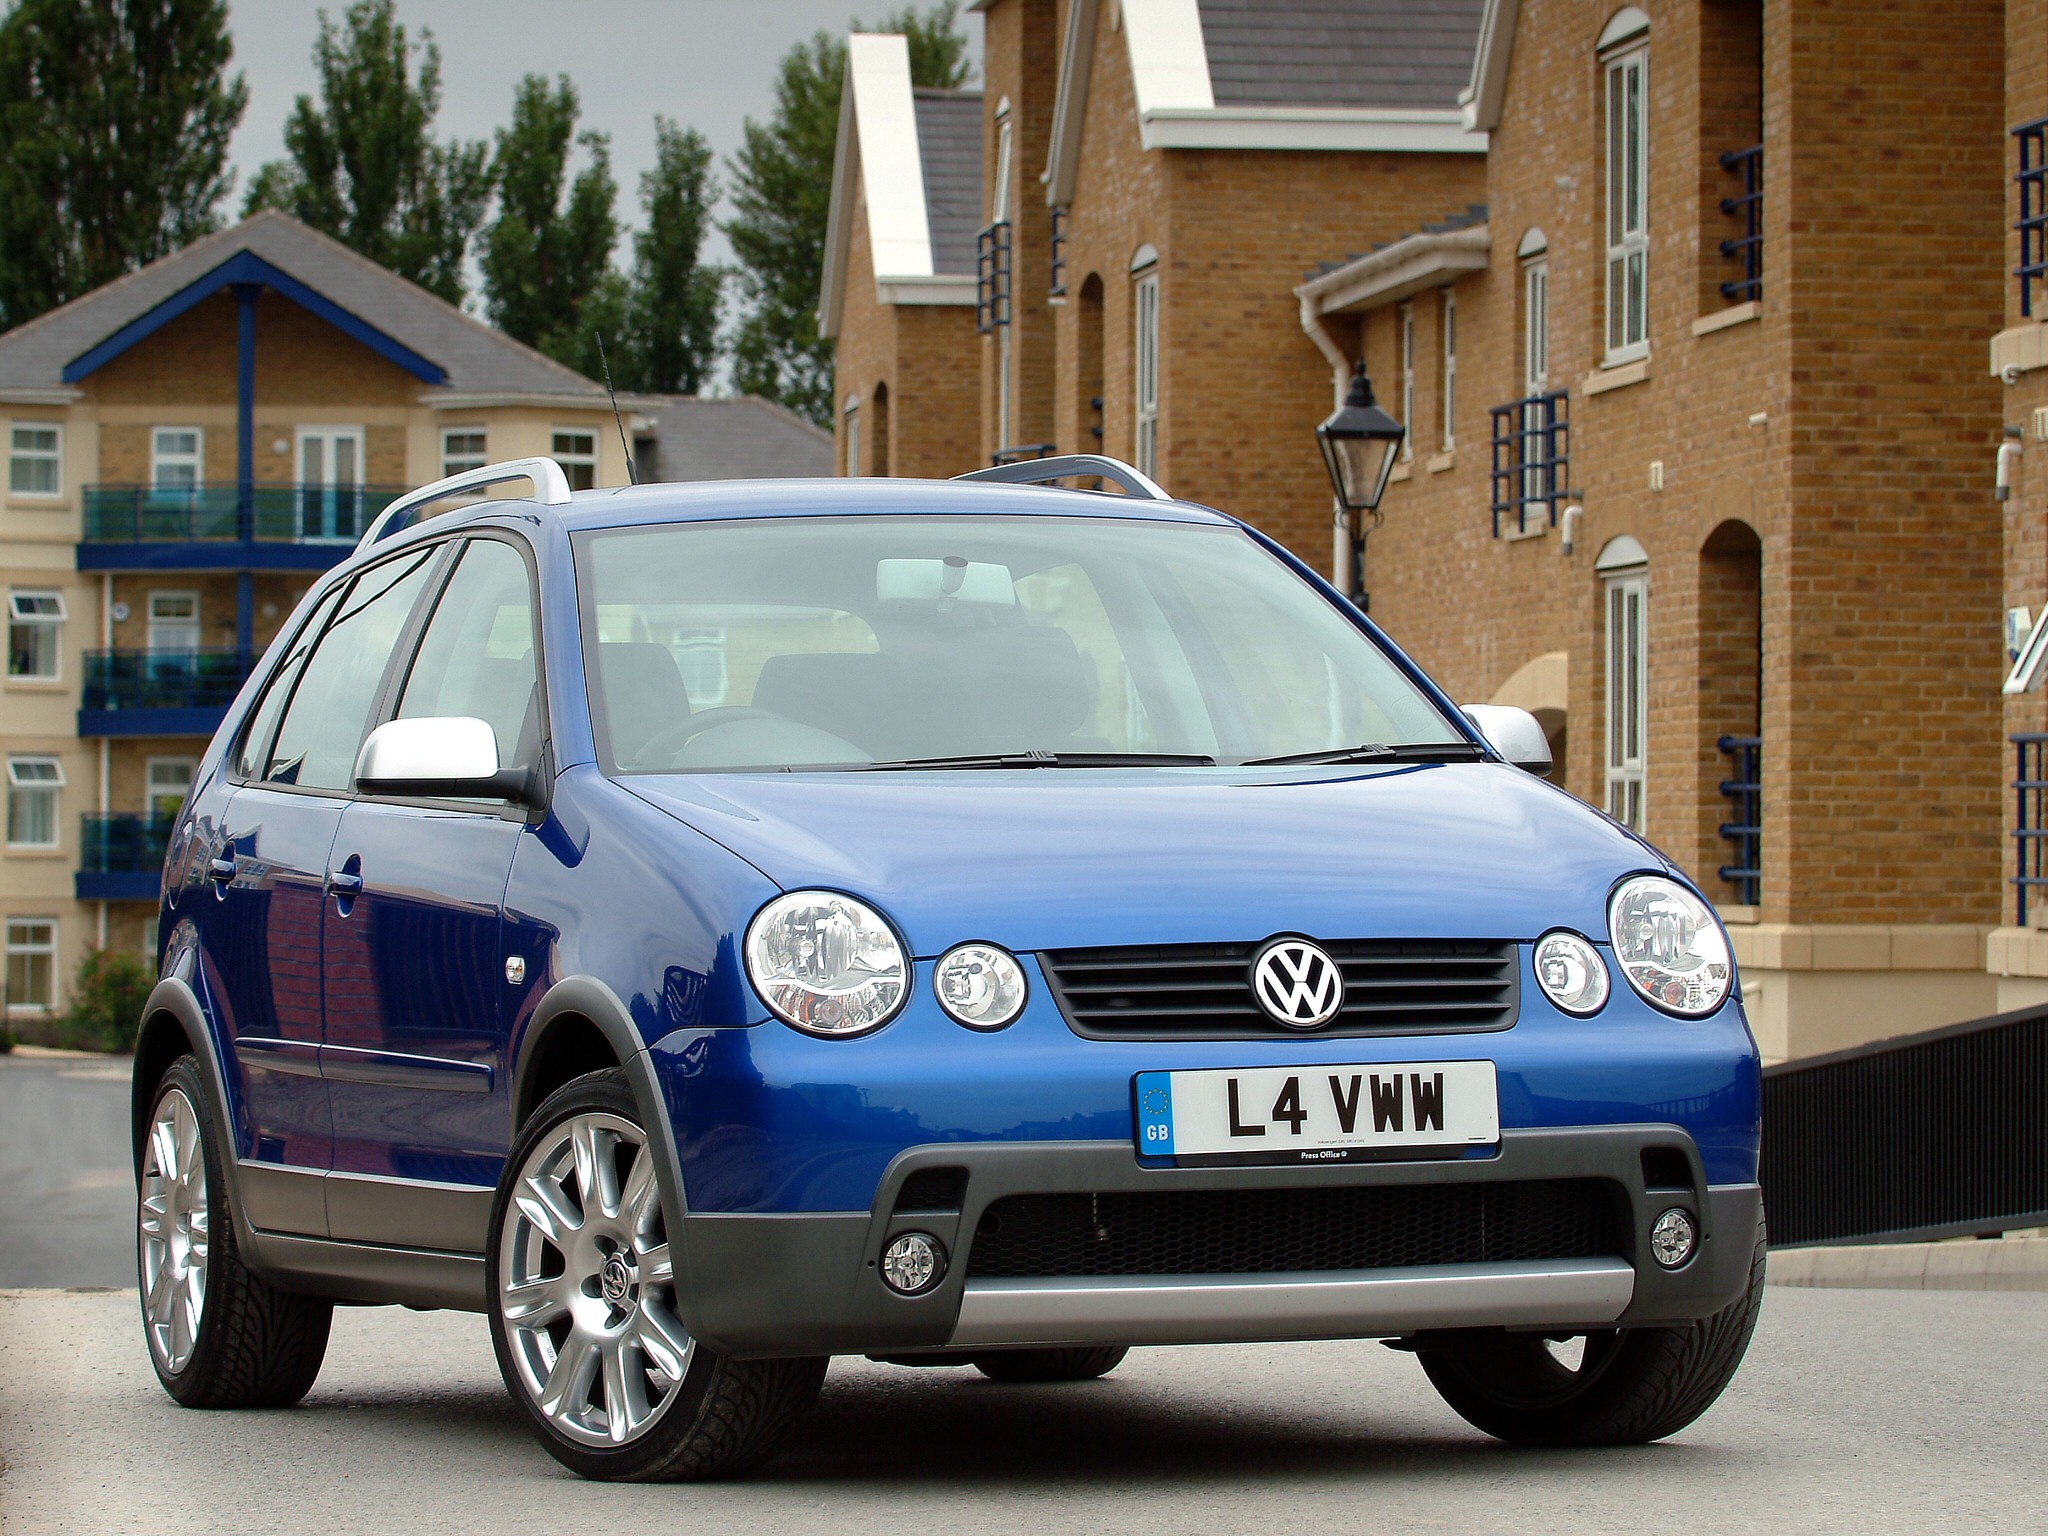 beklimmen Correctie alliantie Volkswagen Polo Fun:picture # 10 , reviews, news, specs, buy car